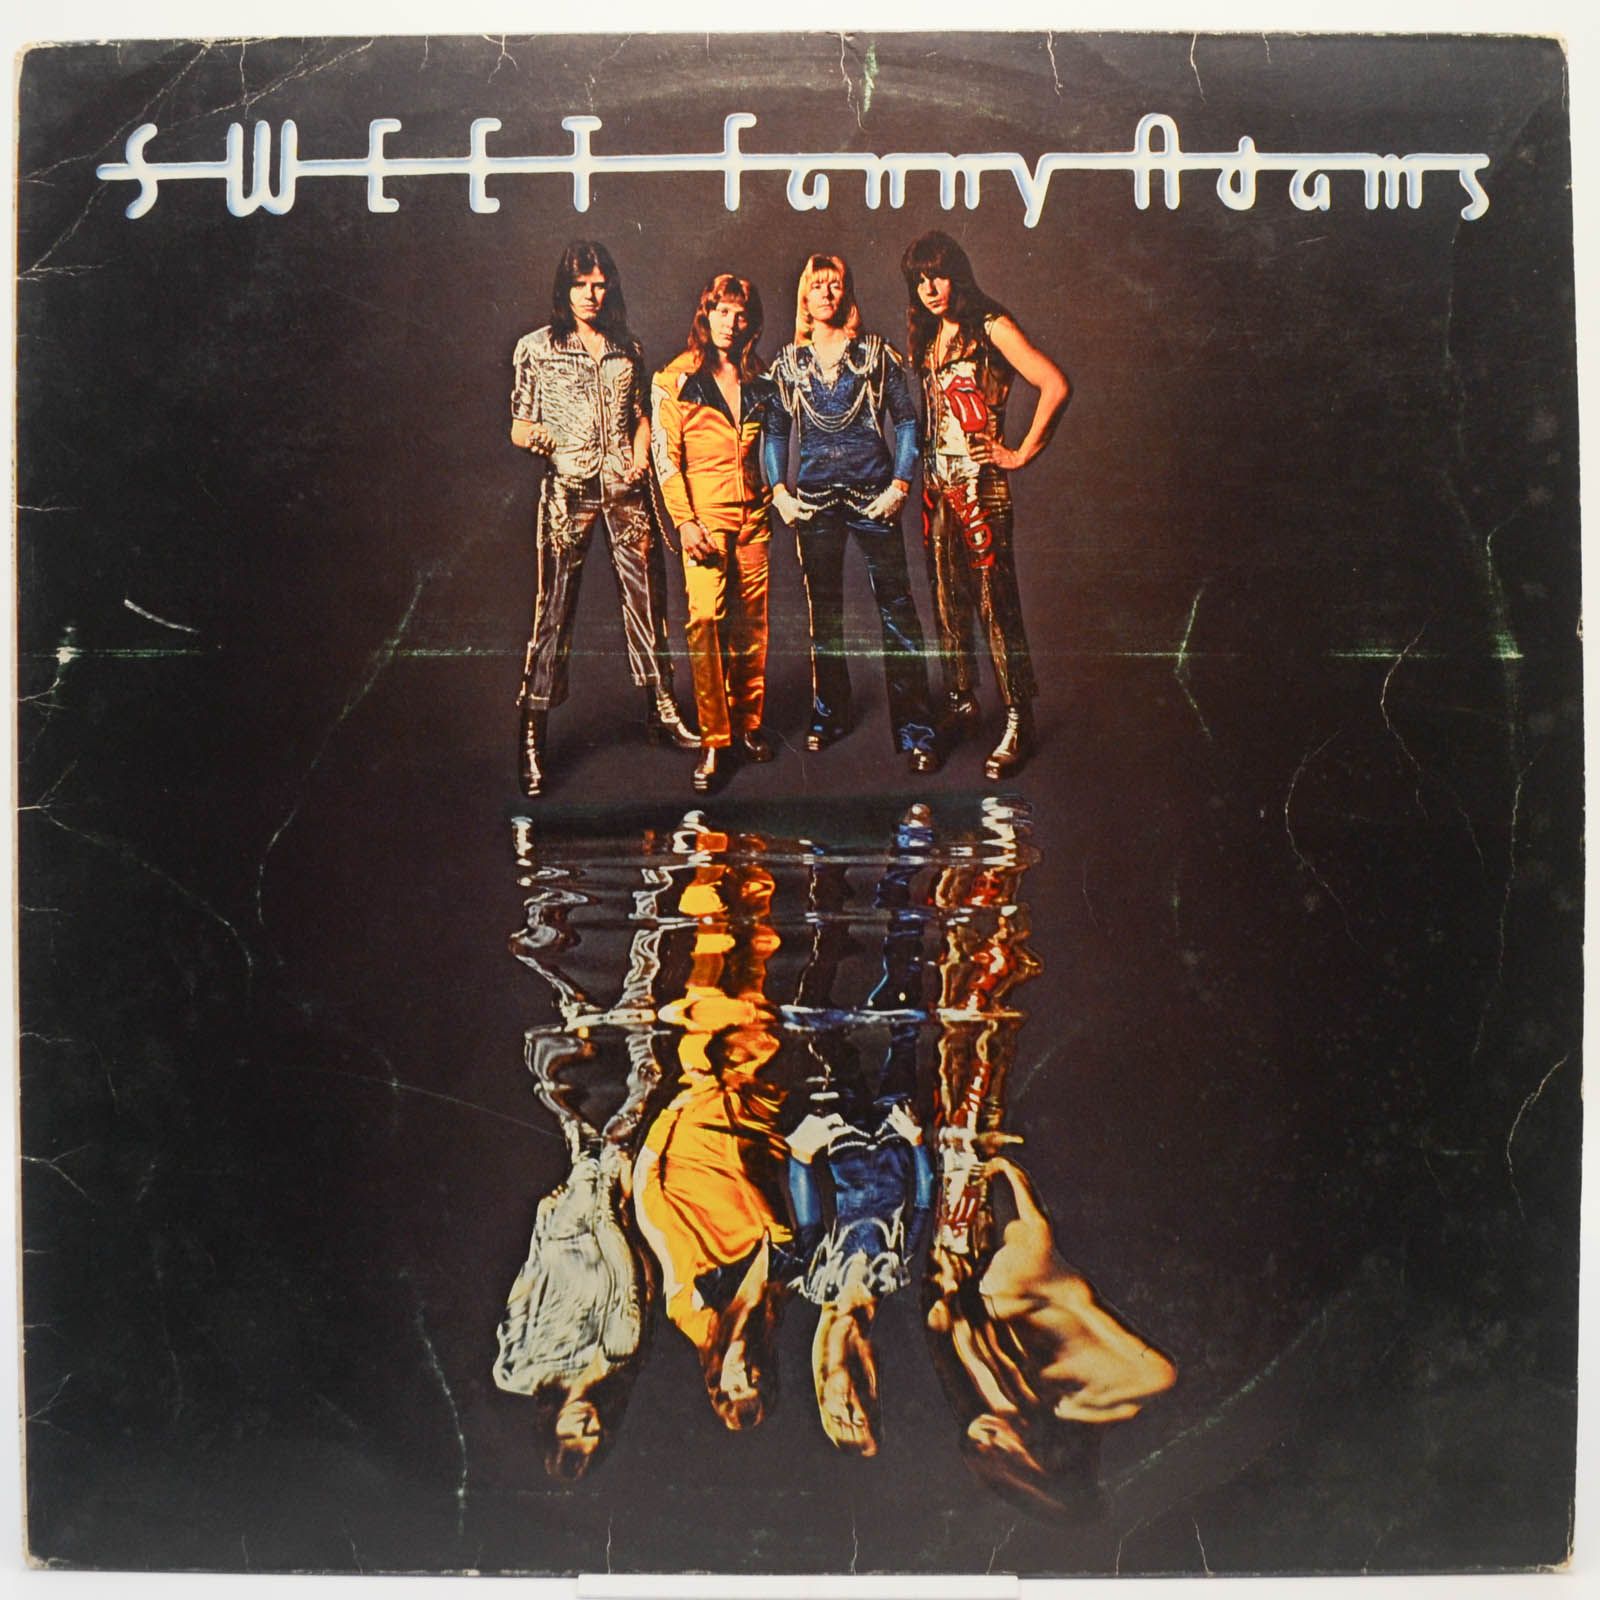 Sweet — Sweet Fanny Adams, 1974